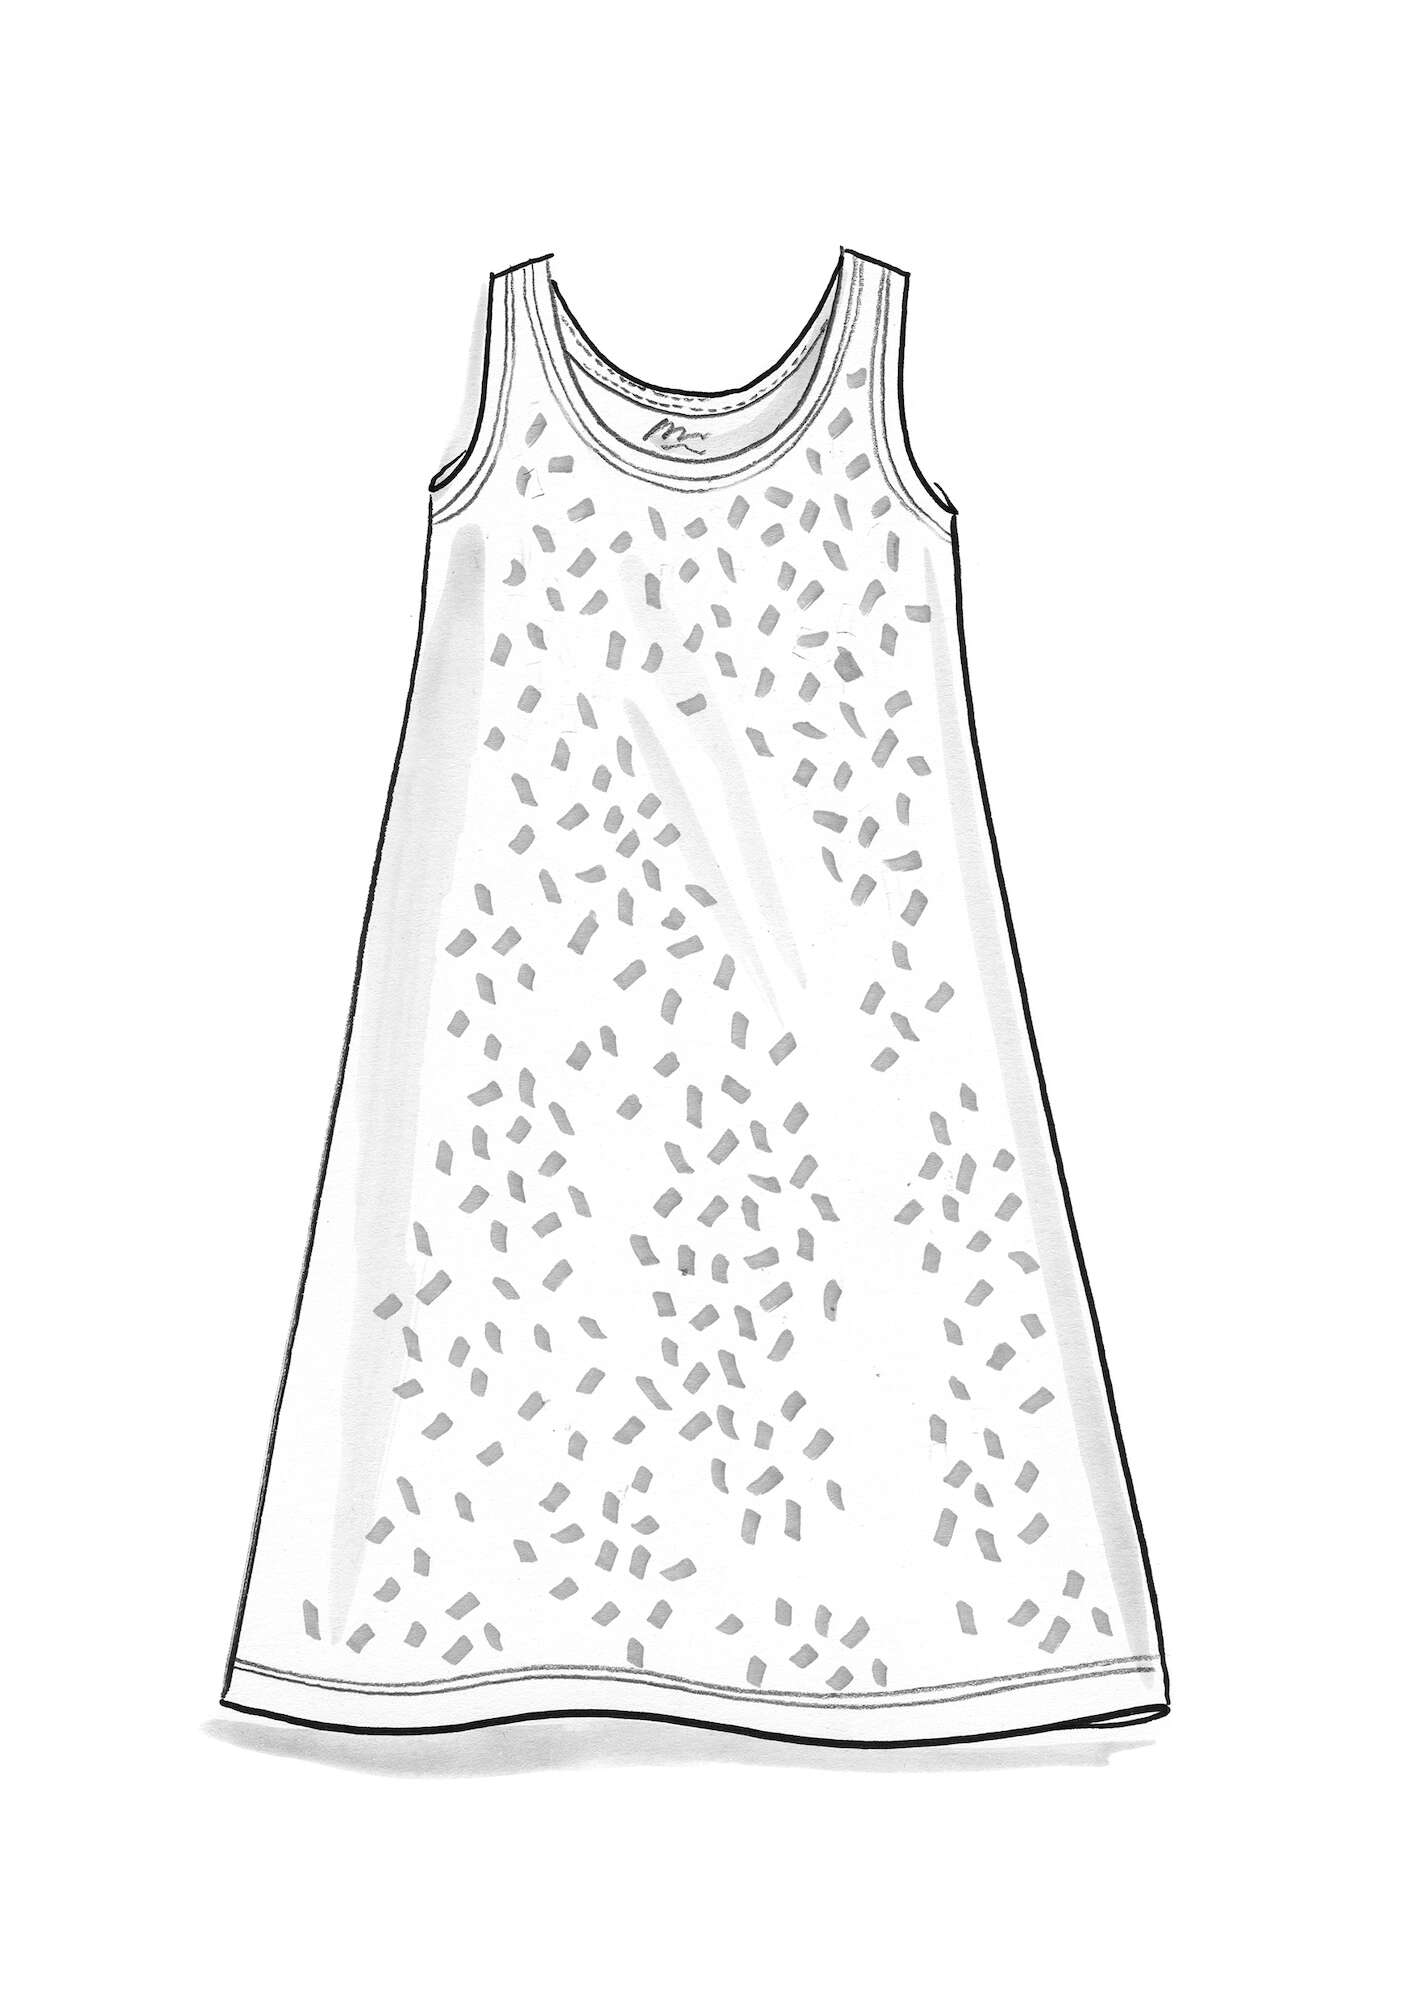 Mouwloze tricot jurk  Tilde  van lyocell/elastaan porseleinblauw/dessin